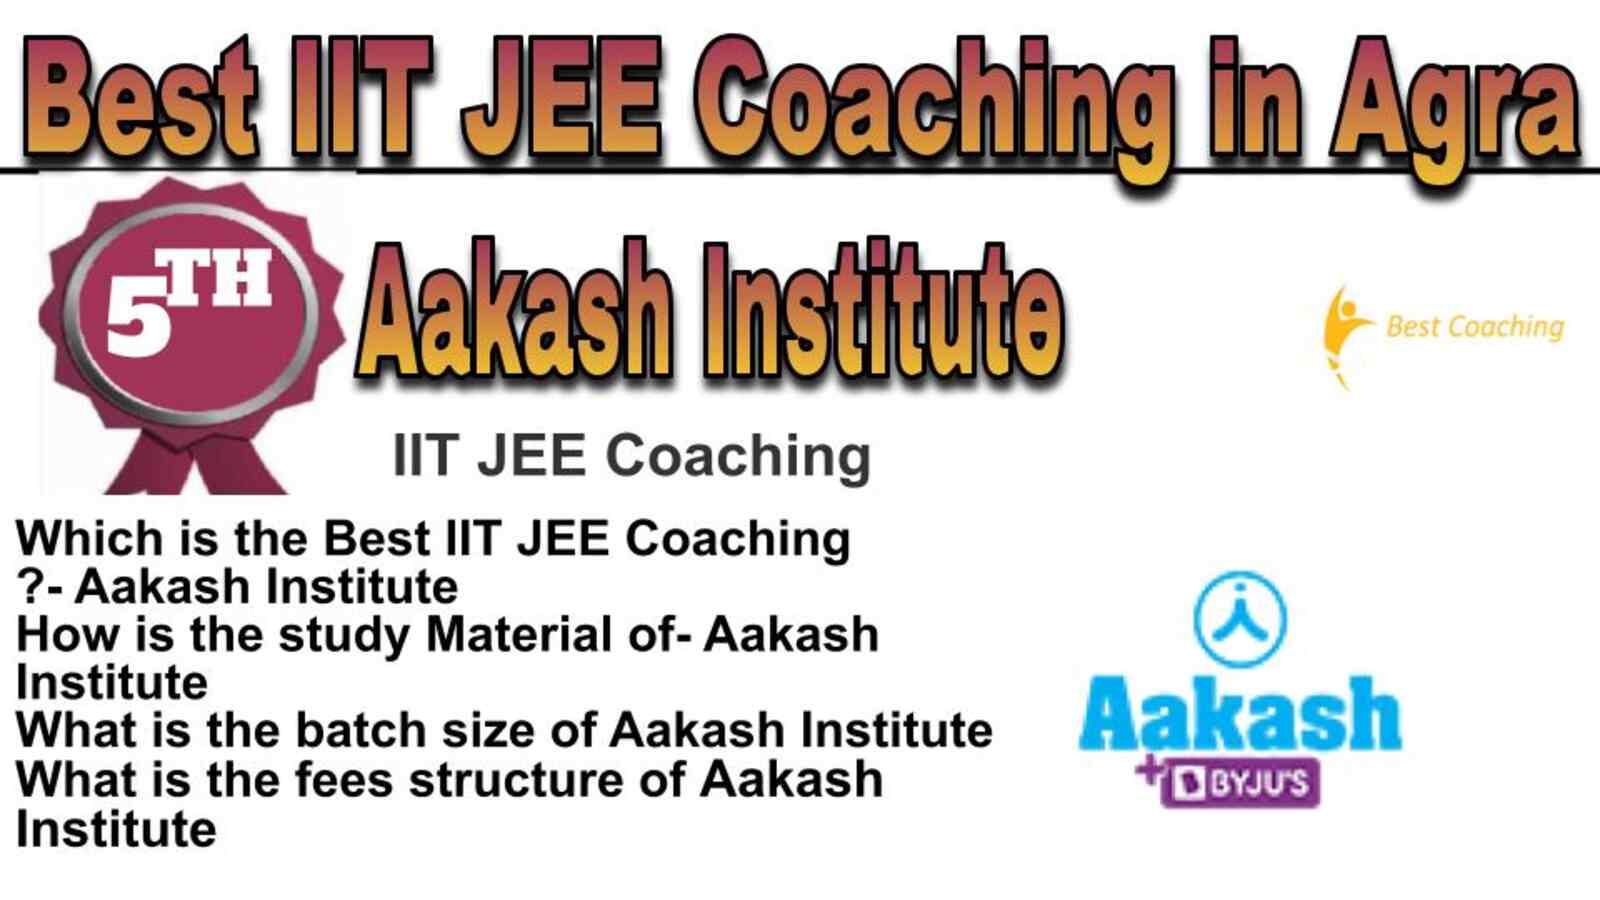 Rank 5 best IIT JEE coaching in Agra